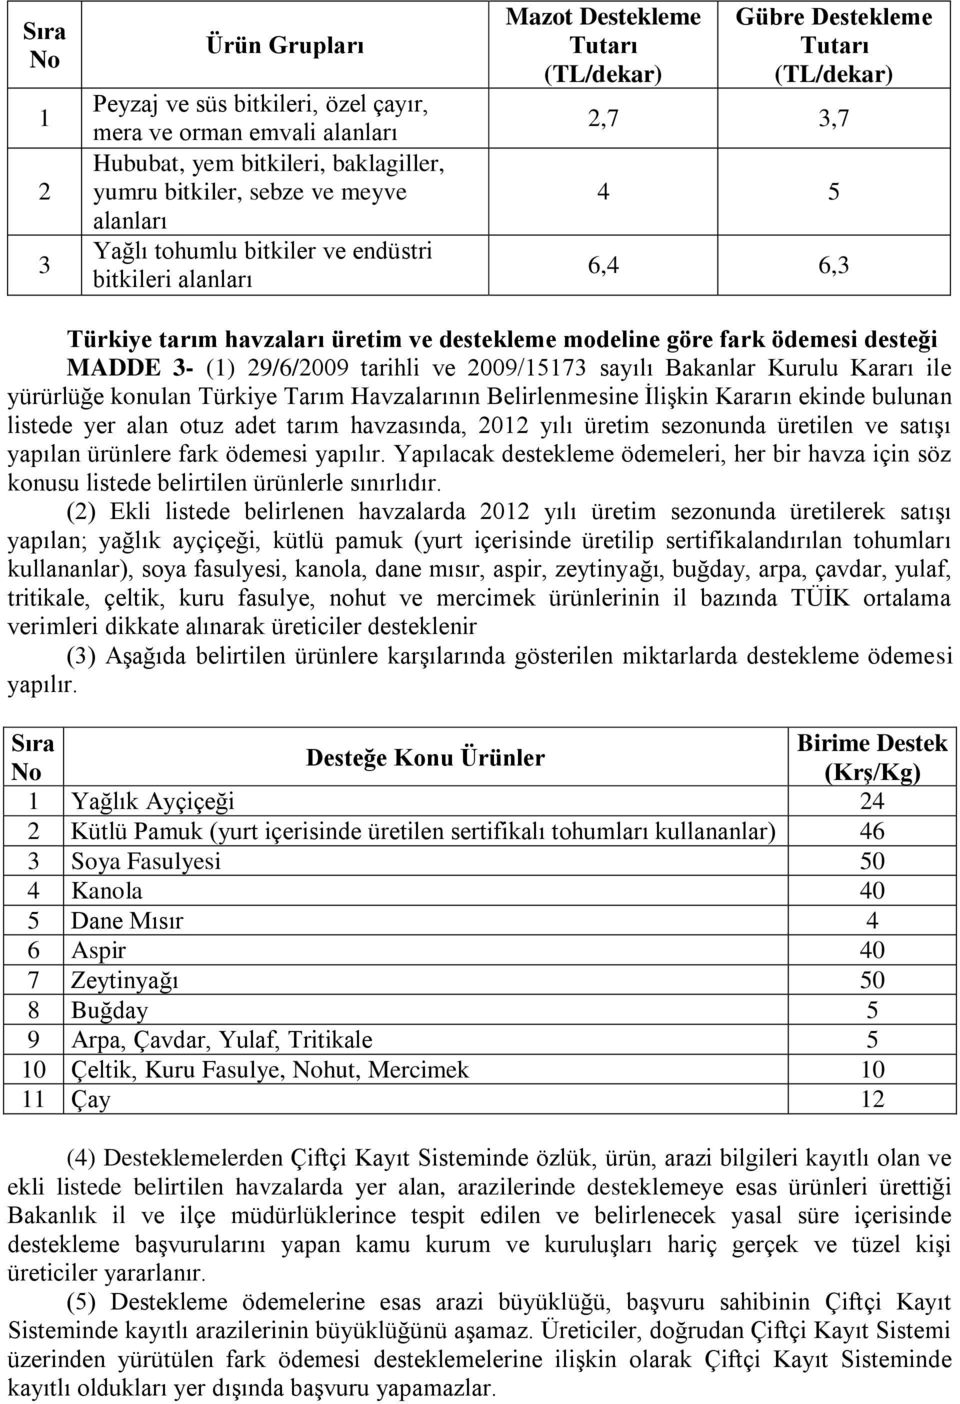 MADDE 3- (1) 29/6/2009 tarihli ve 2009/15173 sayılı Bakanlar Kurulu Kararı ile yürürlüğe konulan Türkiye Tarım Havzalarının Belirlenmesine ĠliĢkin Kararın ekinde bulunan listede yer alan otuz adet